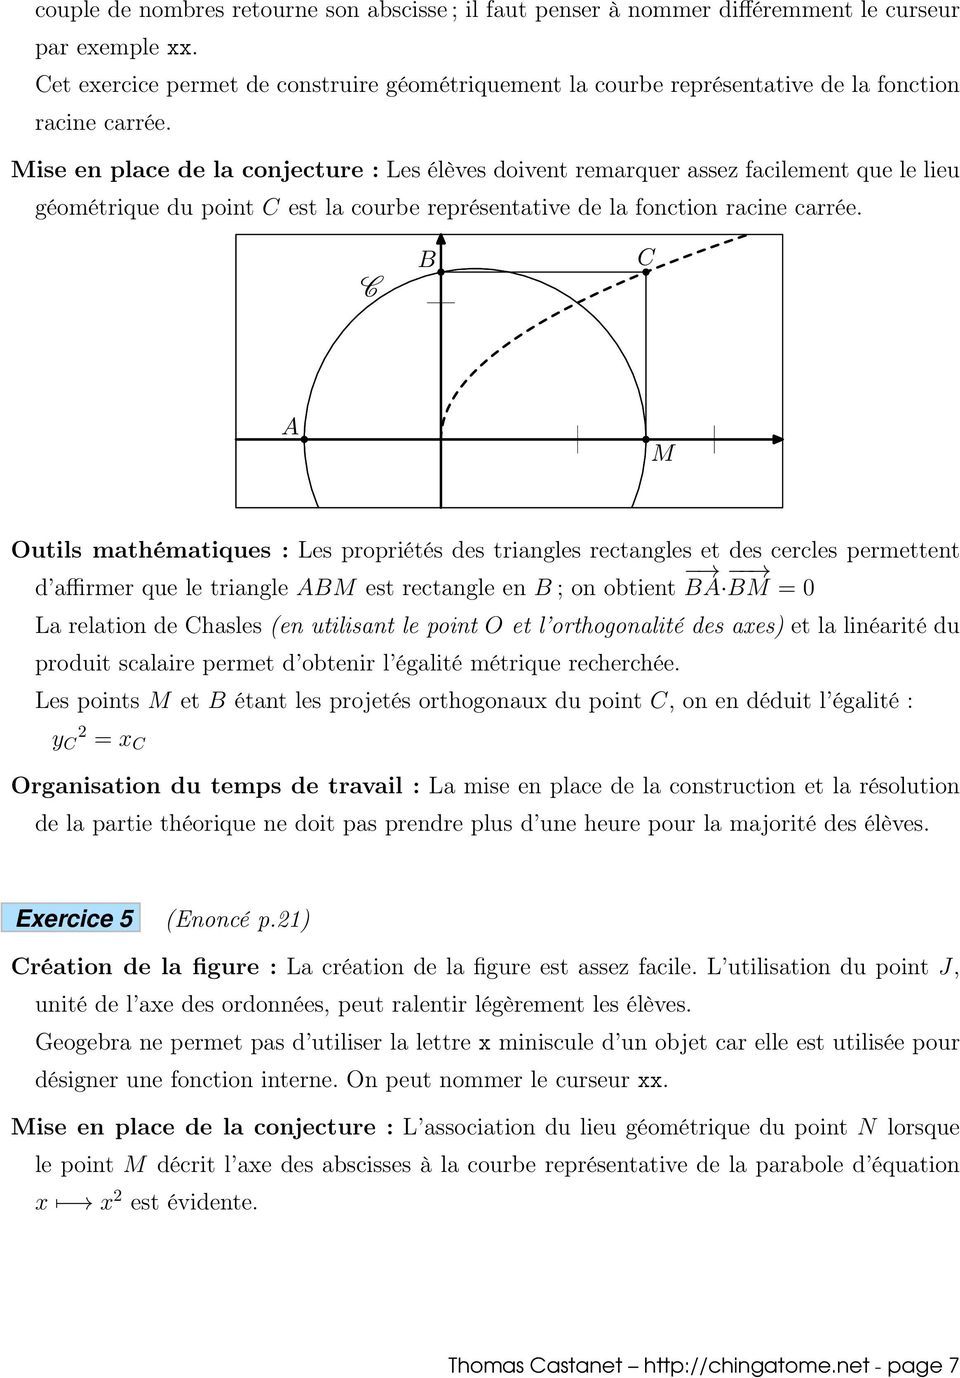 ise en place de la conjecture : Les élèves doivent remarquer assez facilement que le lieu géométrique du point est la courbe représentative de la fonction racine carrée.